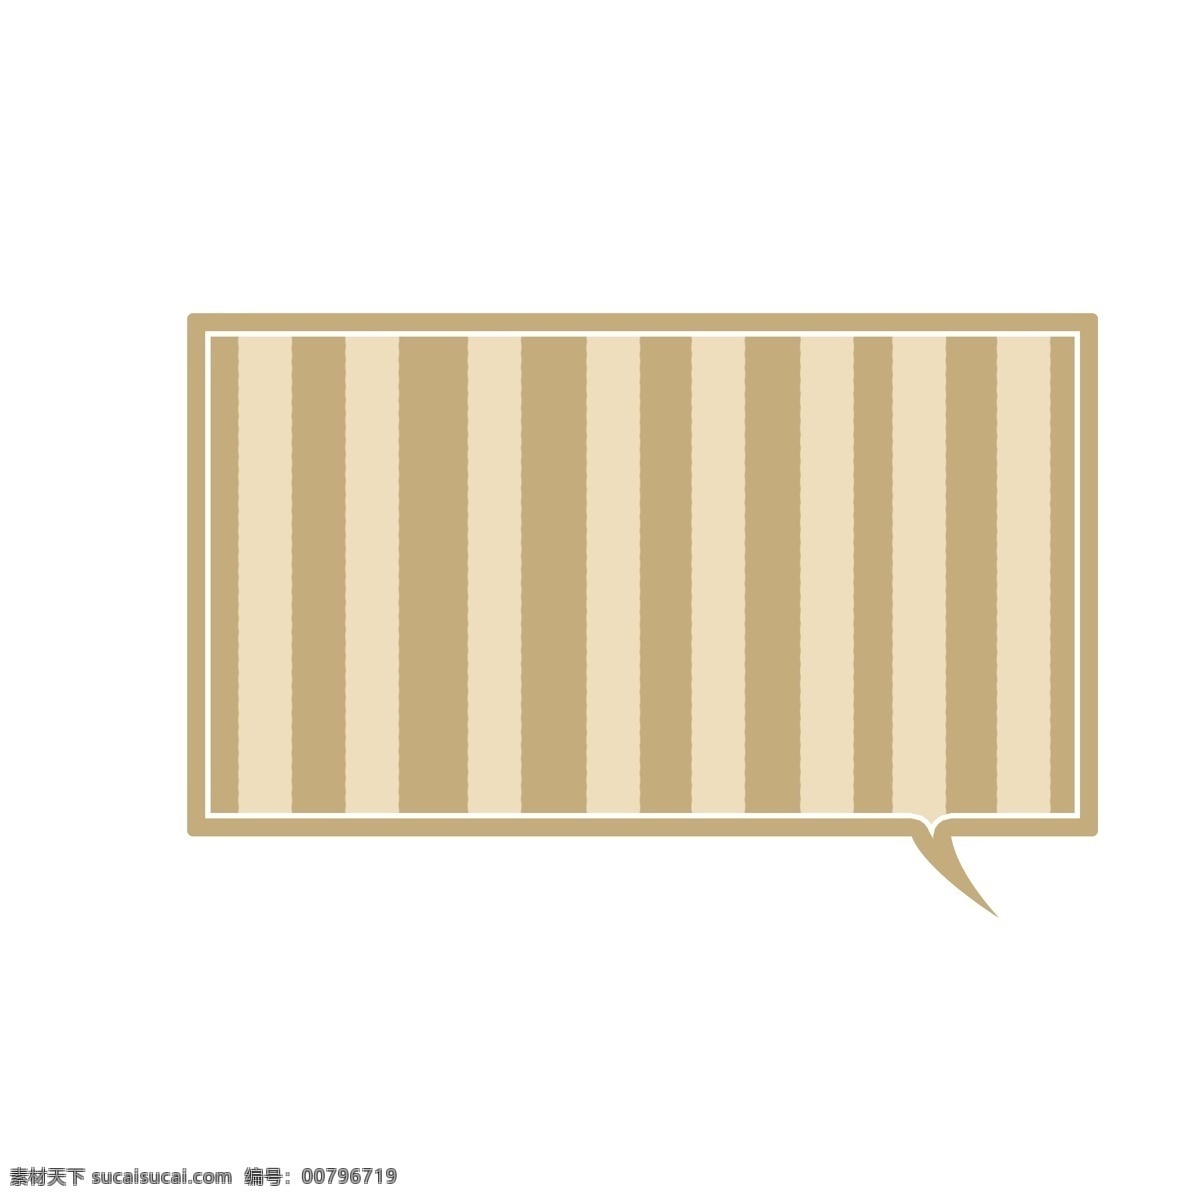 方形 条纹 褐色 卡通 气泡 对话框 文本标题 边框设计 文本框 强调 标题 海报 手绘 banner 手账